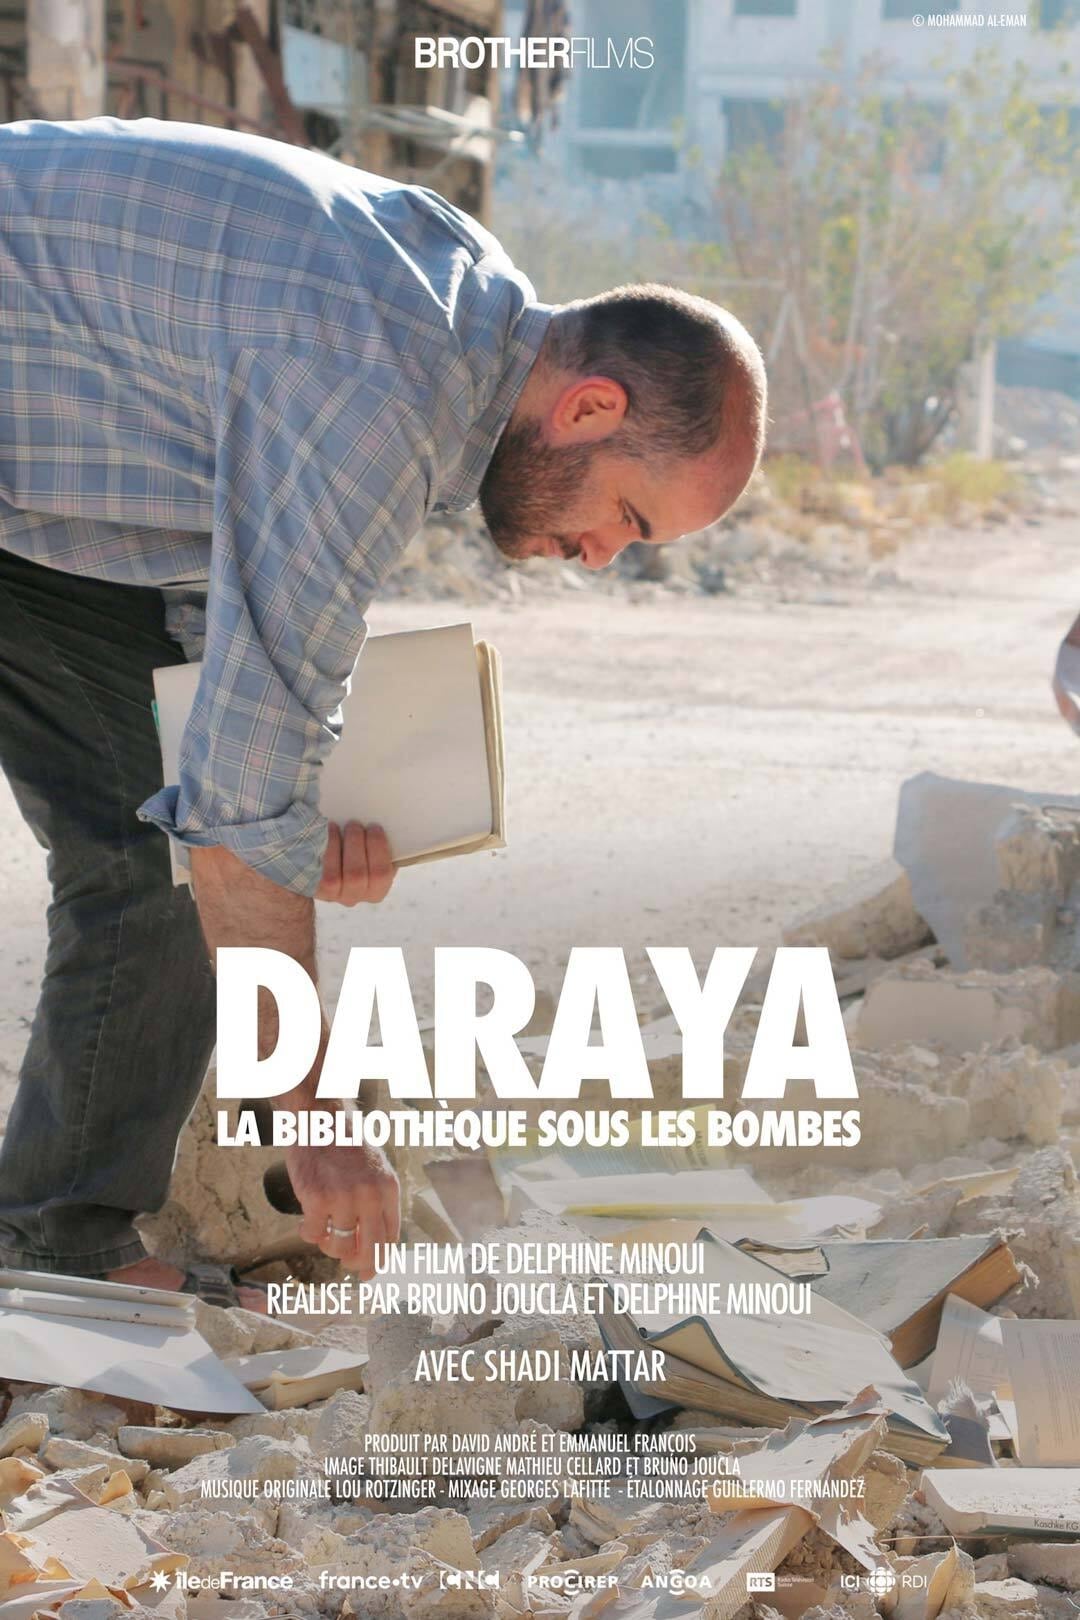 Daraya: A Library Under Bombs